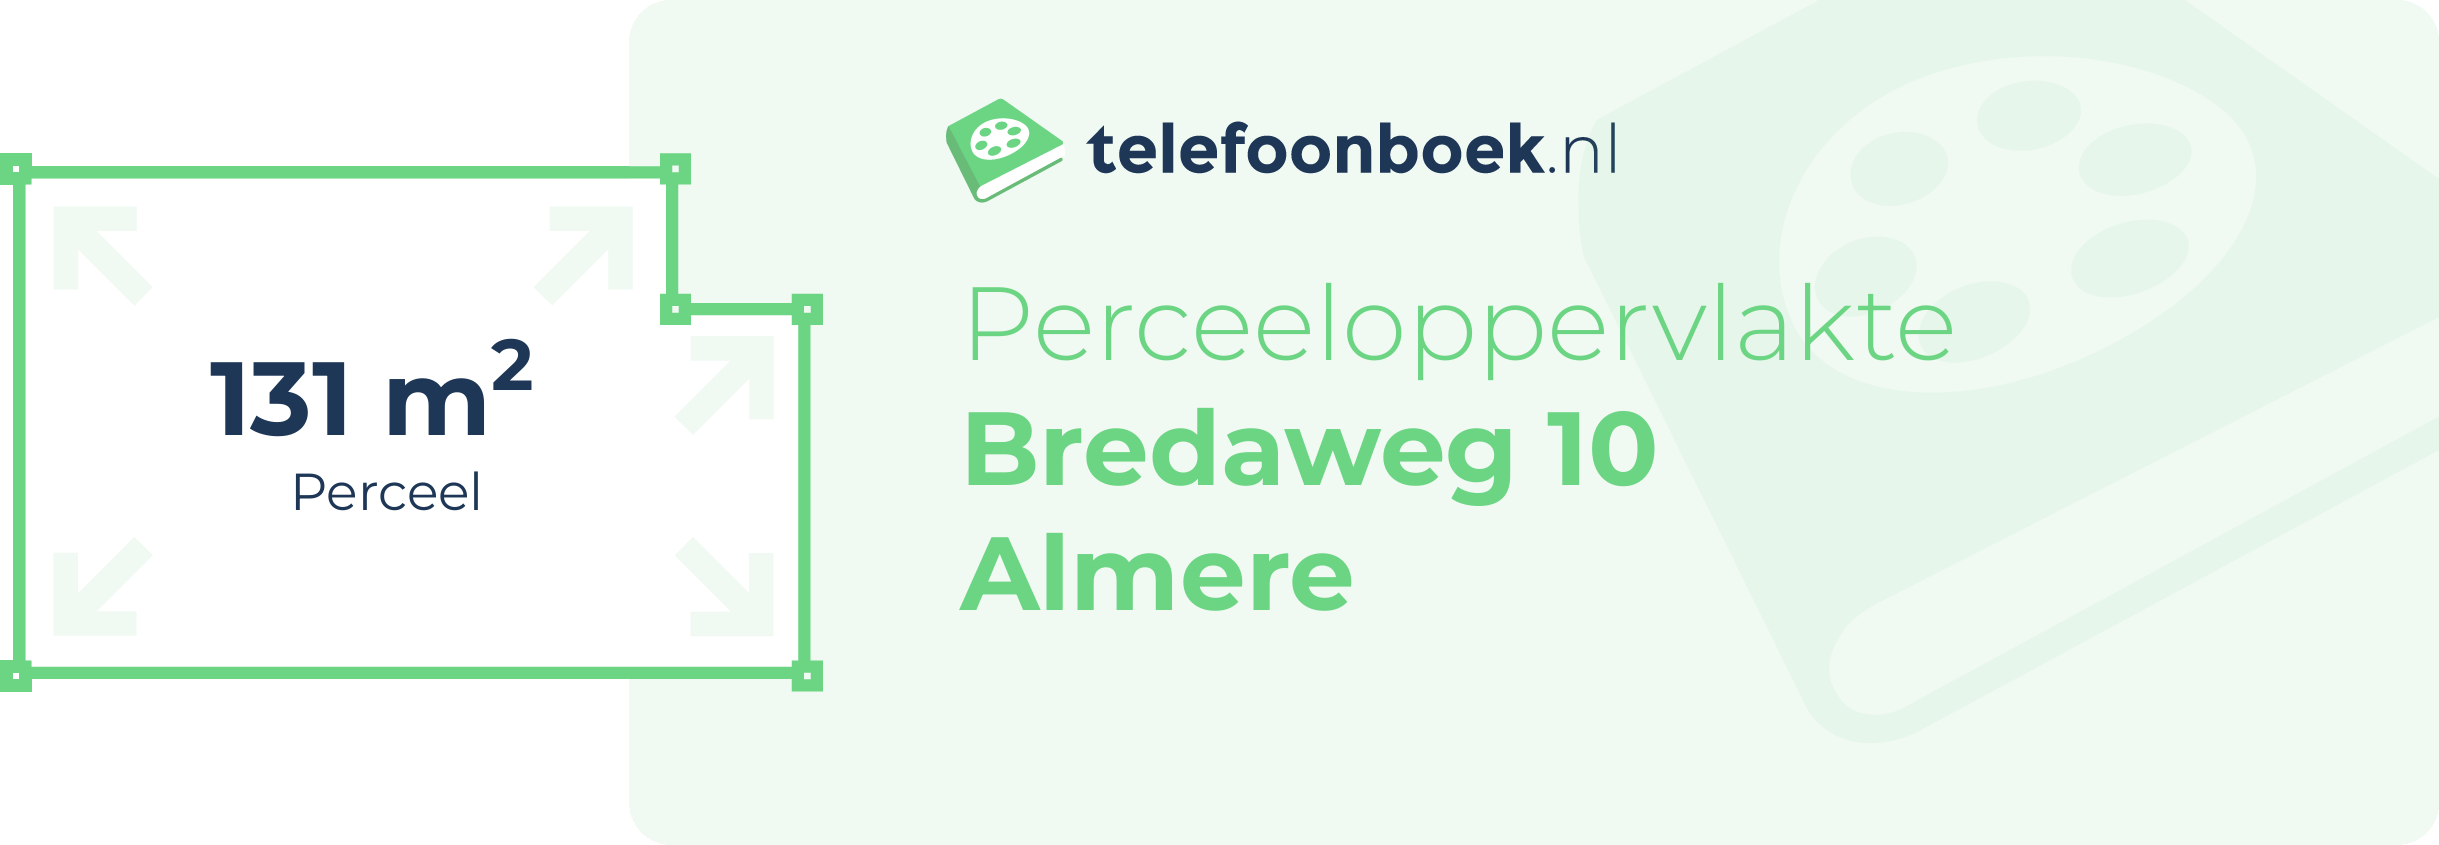 Perceeloppervlakte Bredaweg 10 Almere